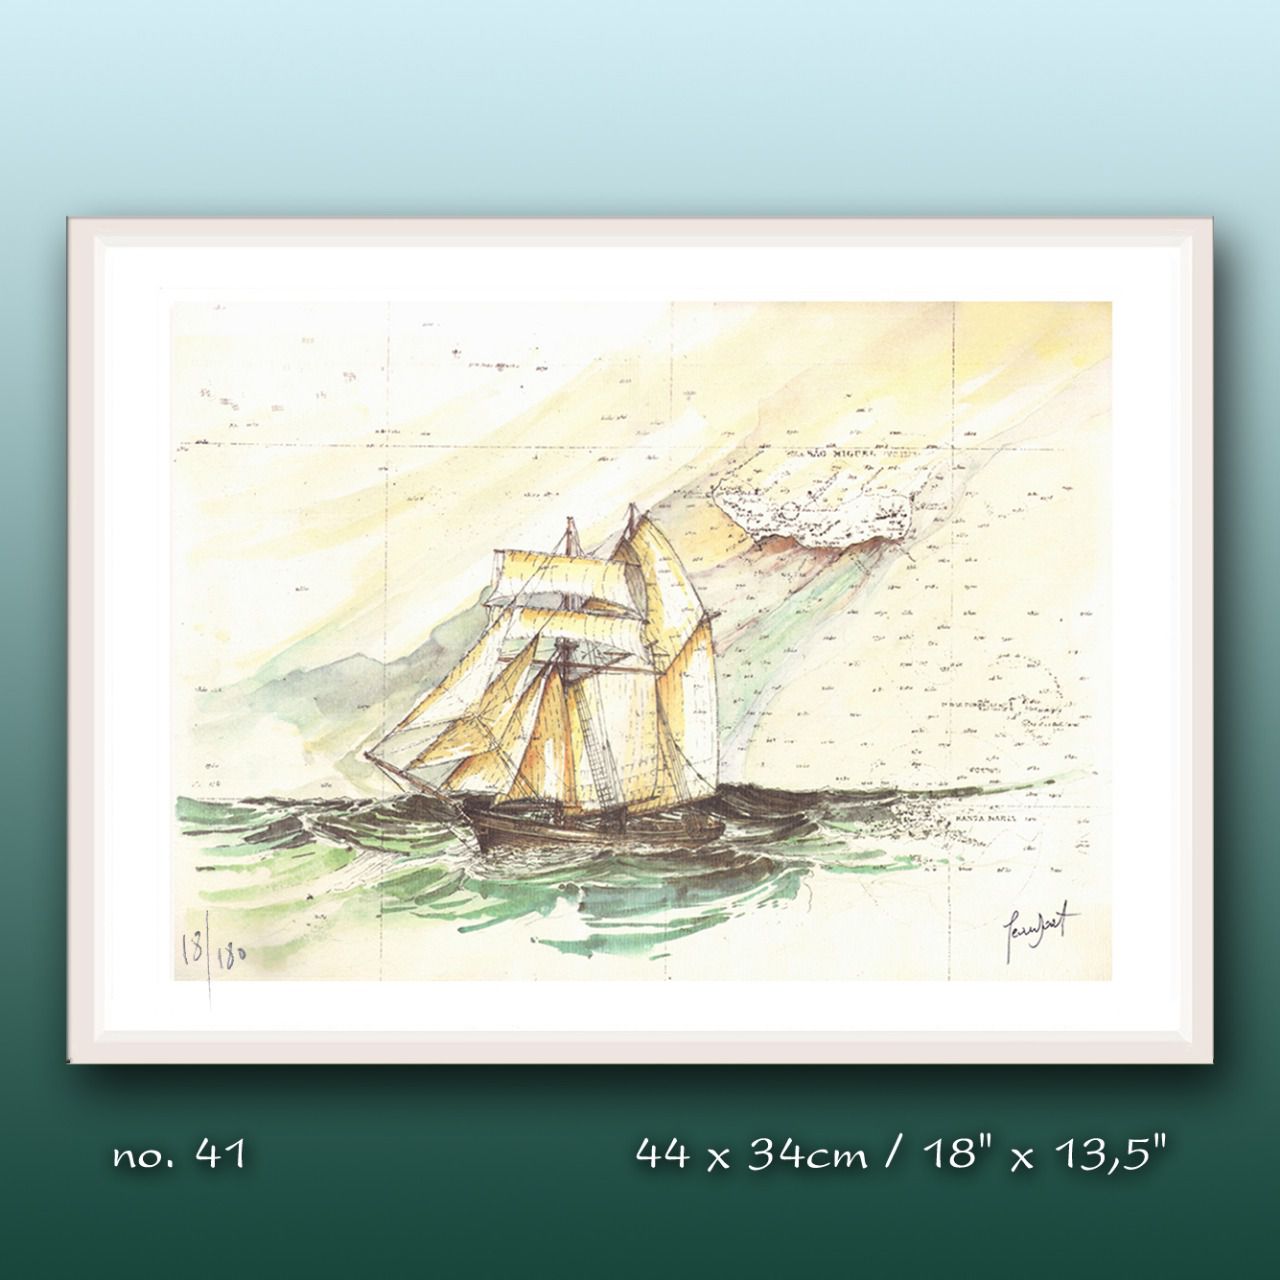 Aquarelle de J. Doat / 44 cm x 34 cm....................No.41 / Un baleinier traditionnel des Açores